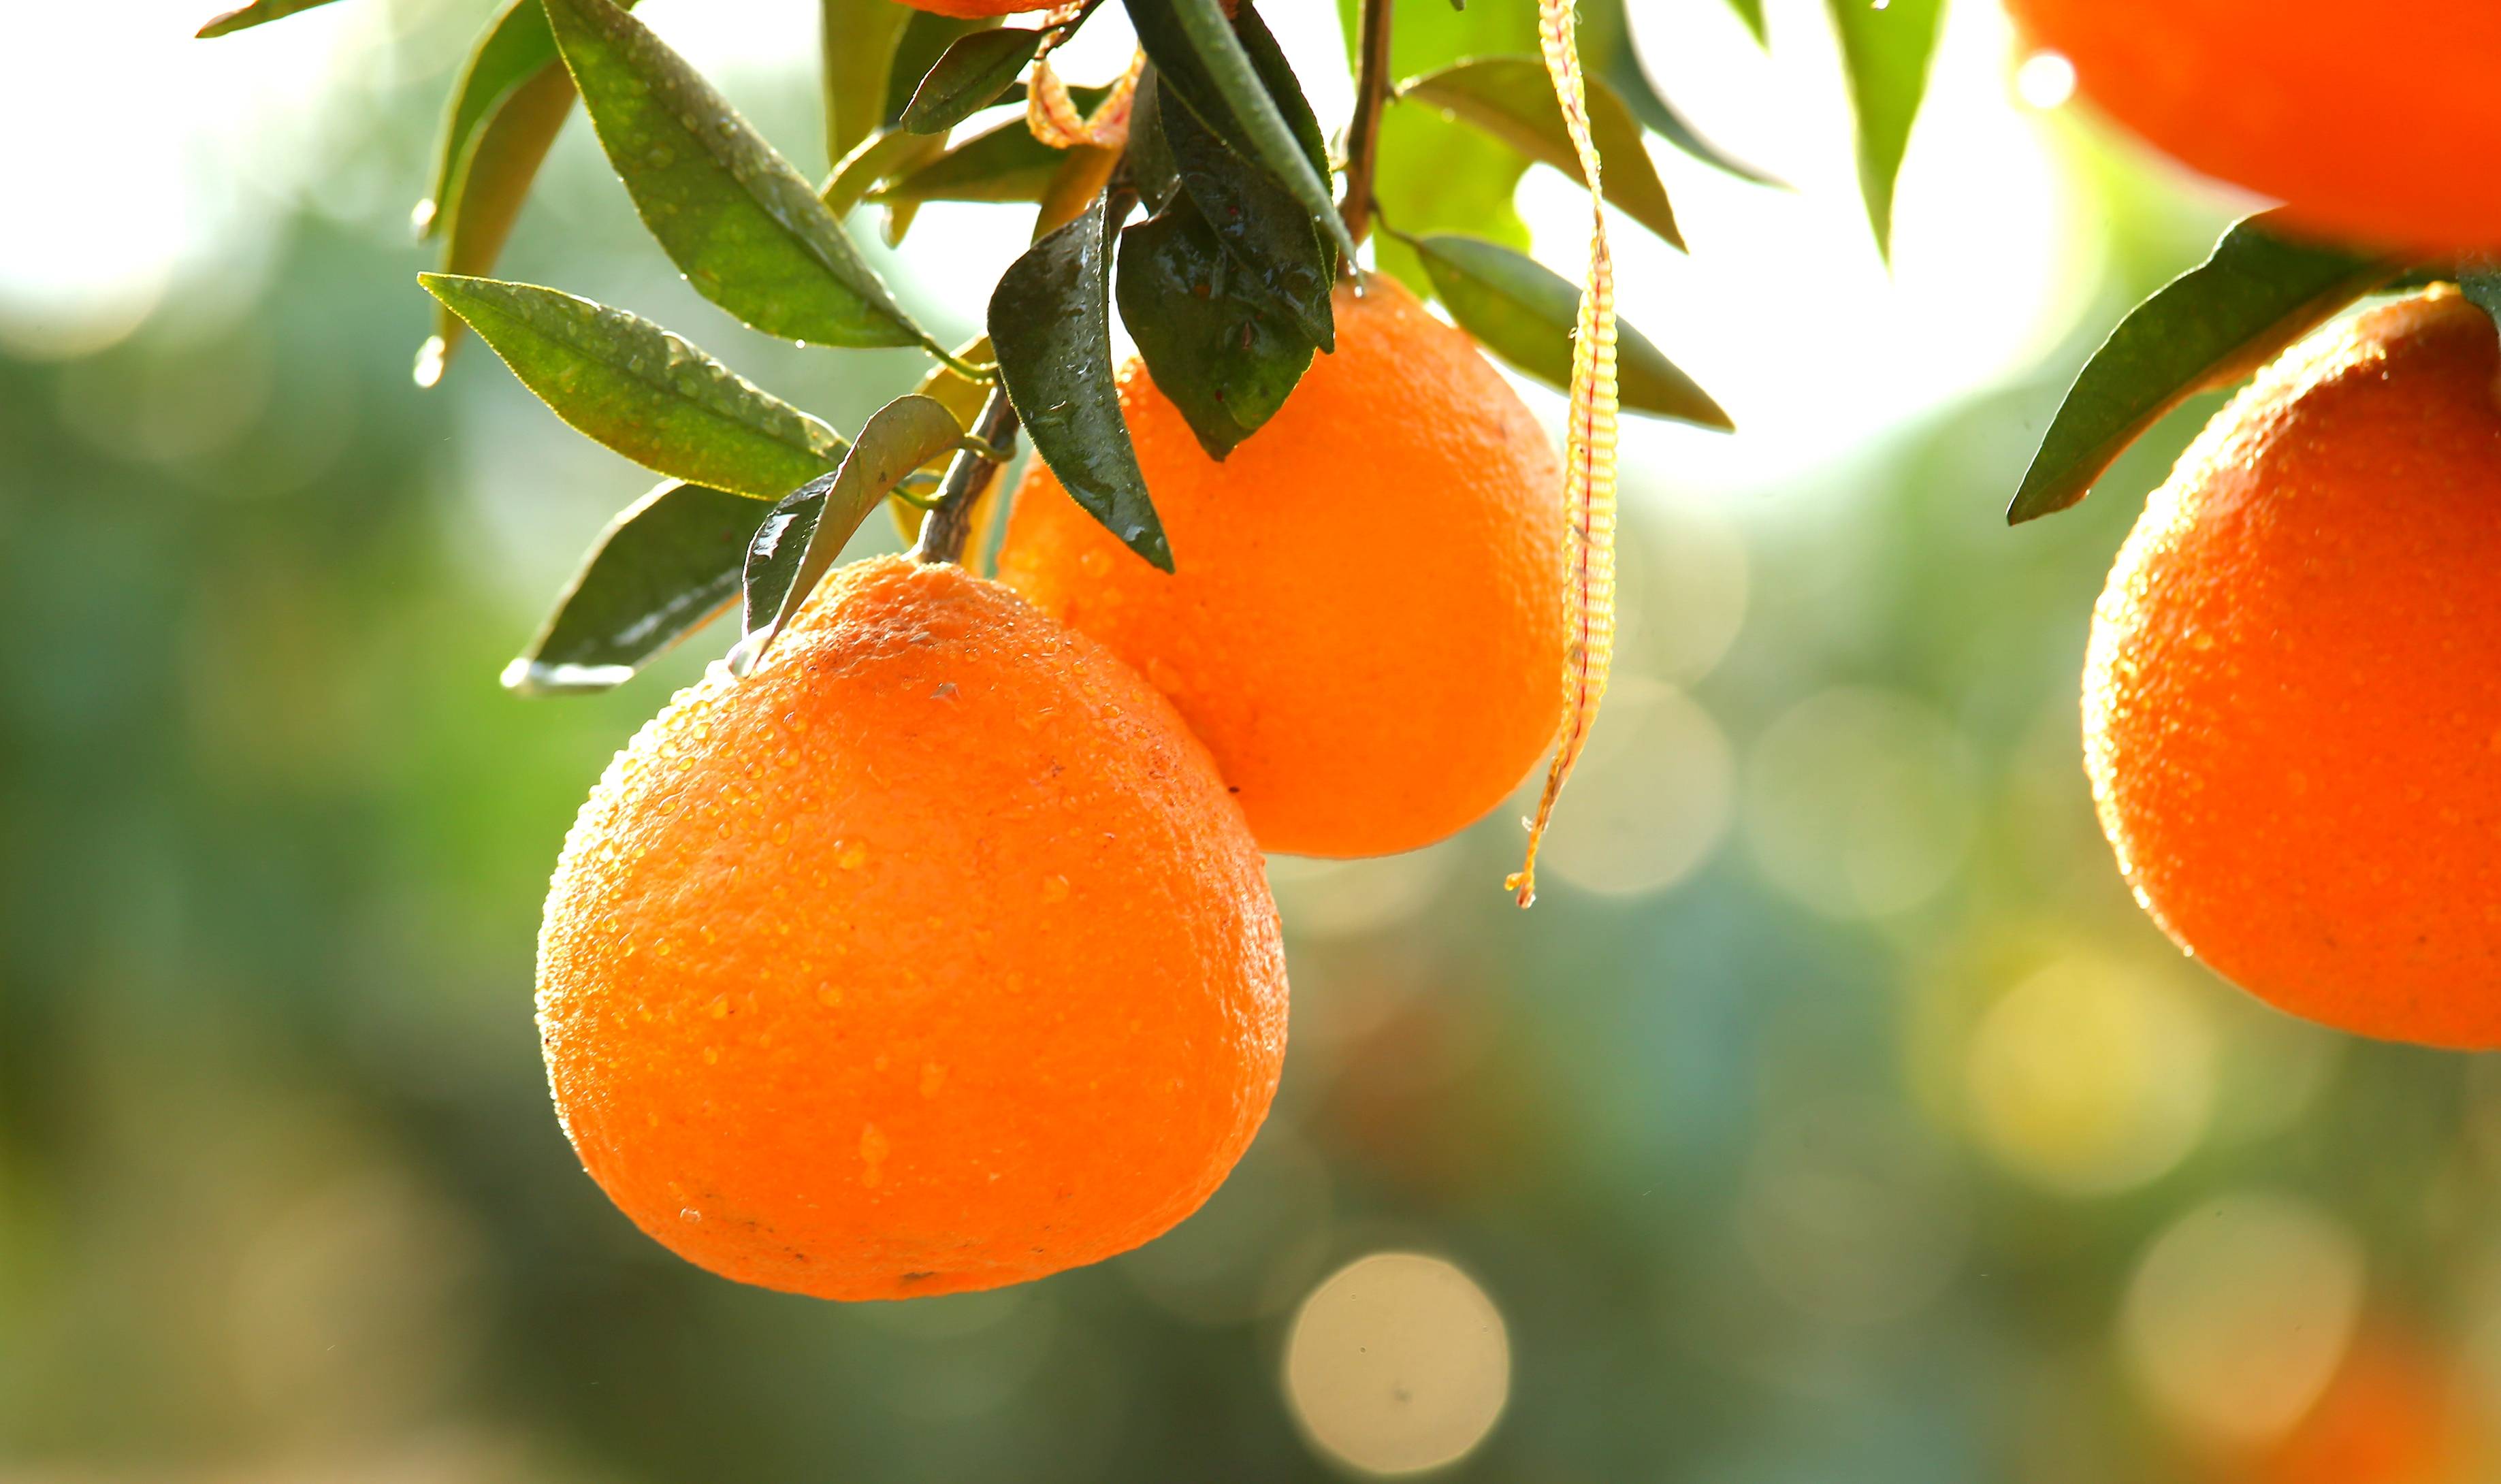 橘子红了——湘南红柑橘喜获丰收,即将上市